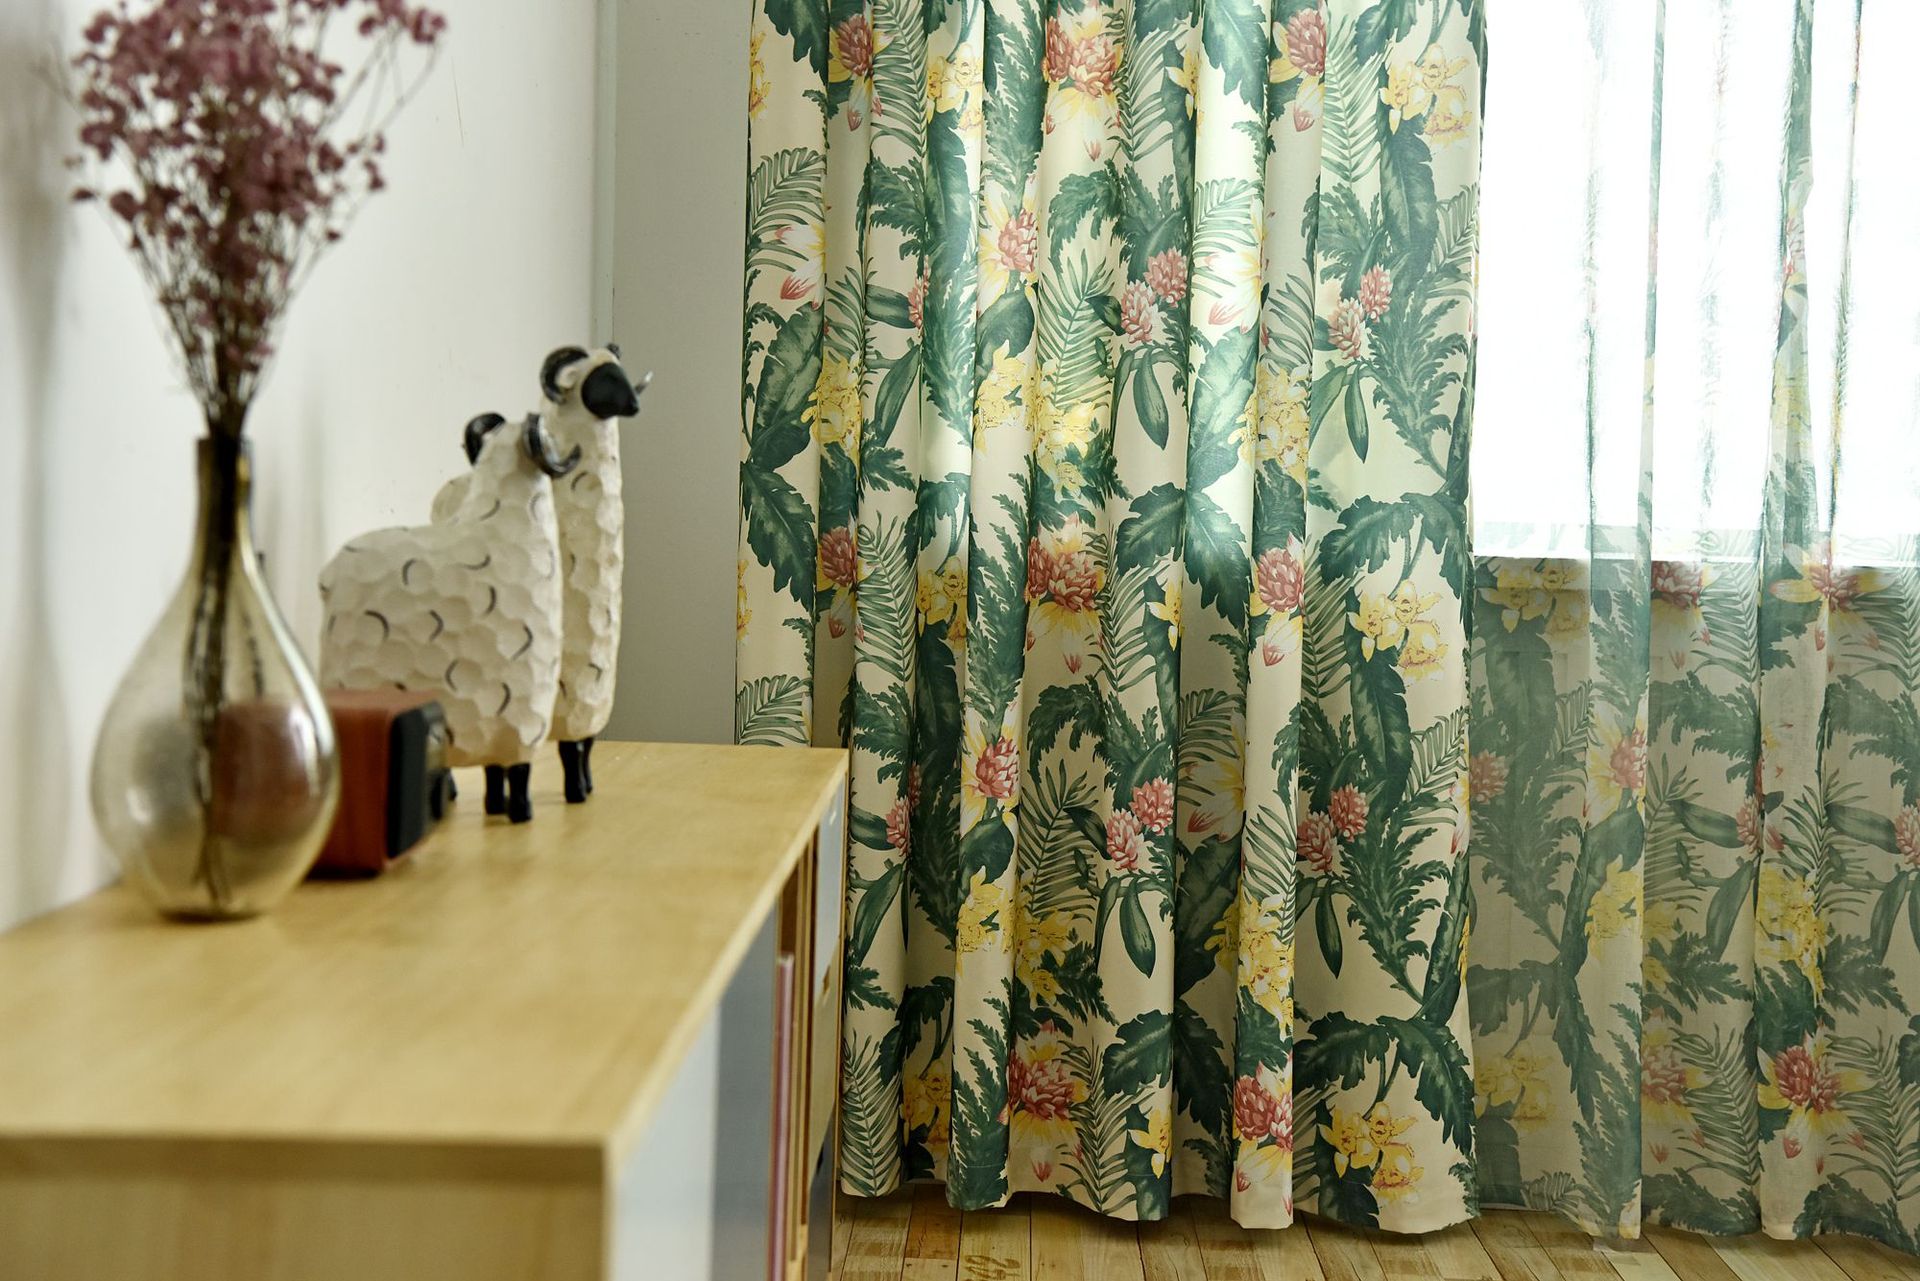 伊莎莱-美式风格客厅窗帘效果图-客厅窗帘图片